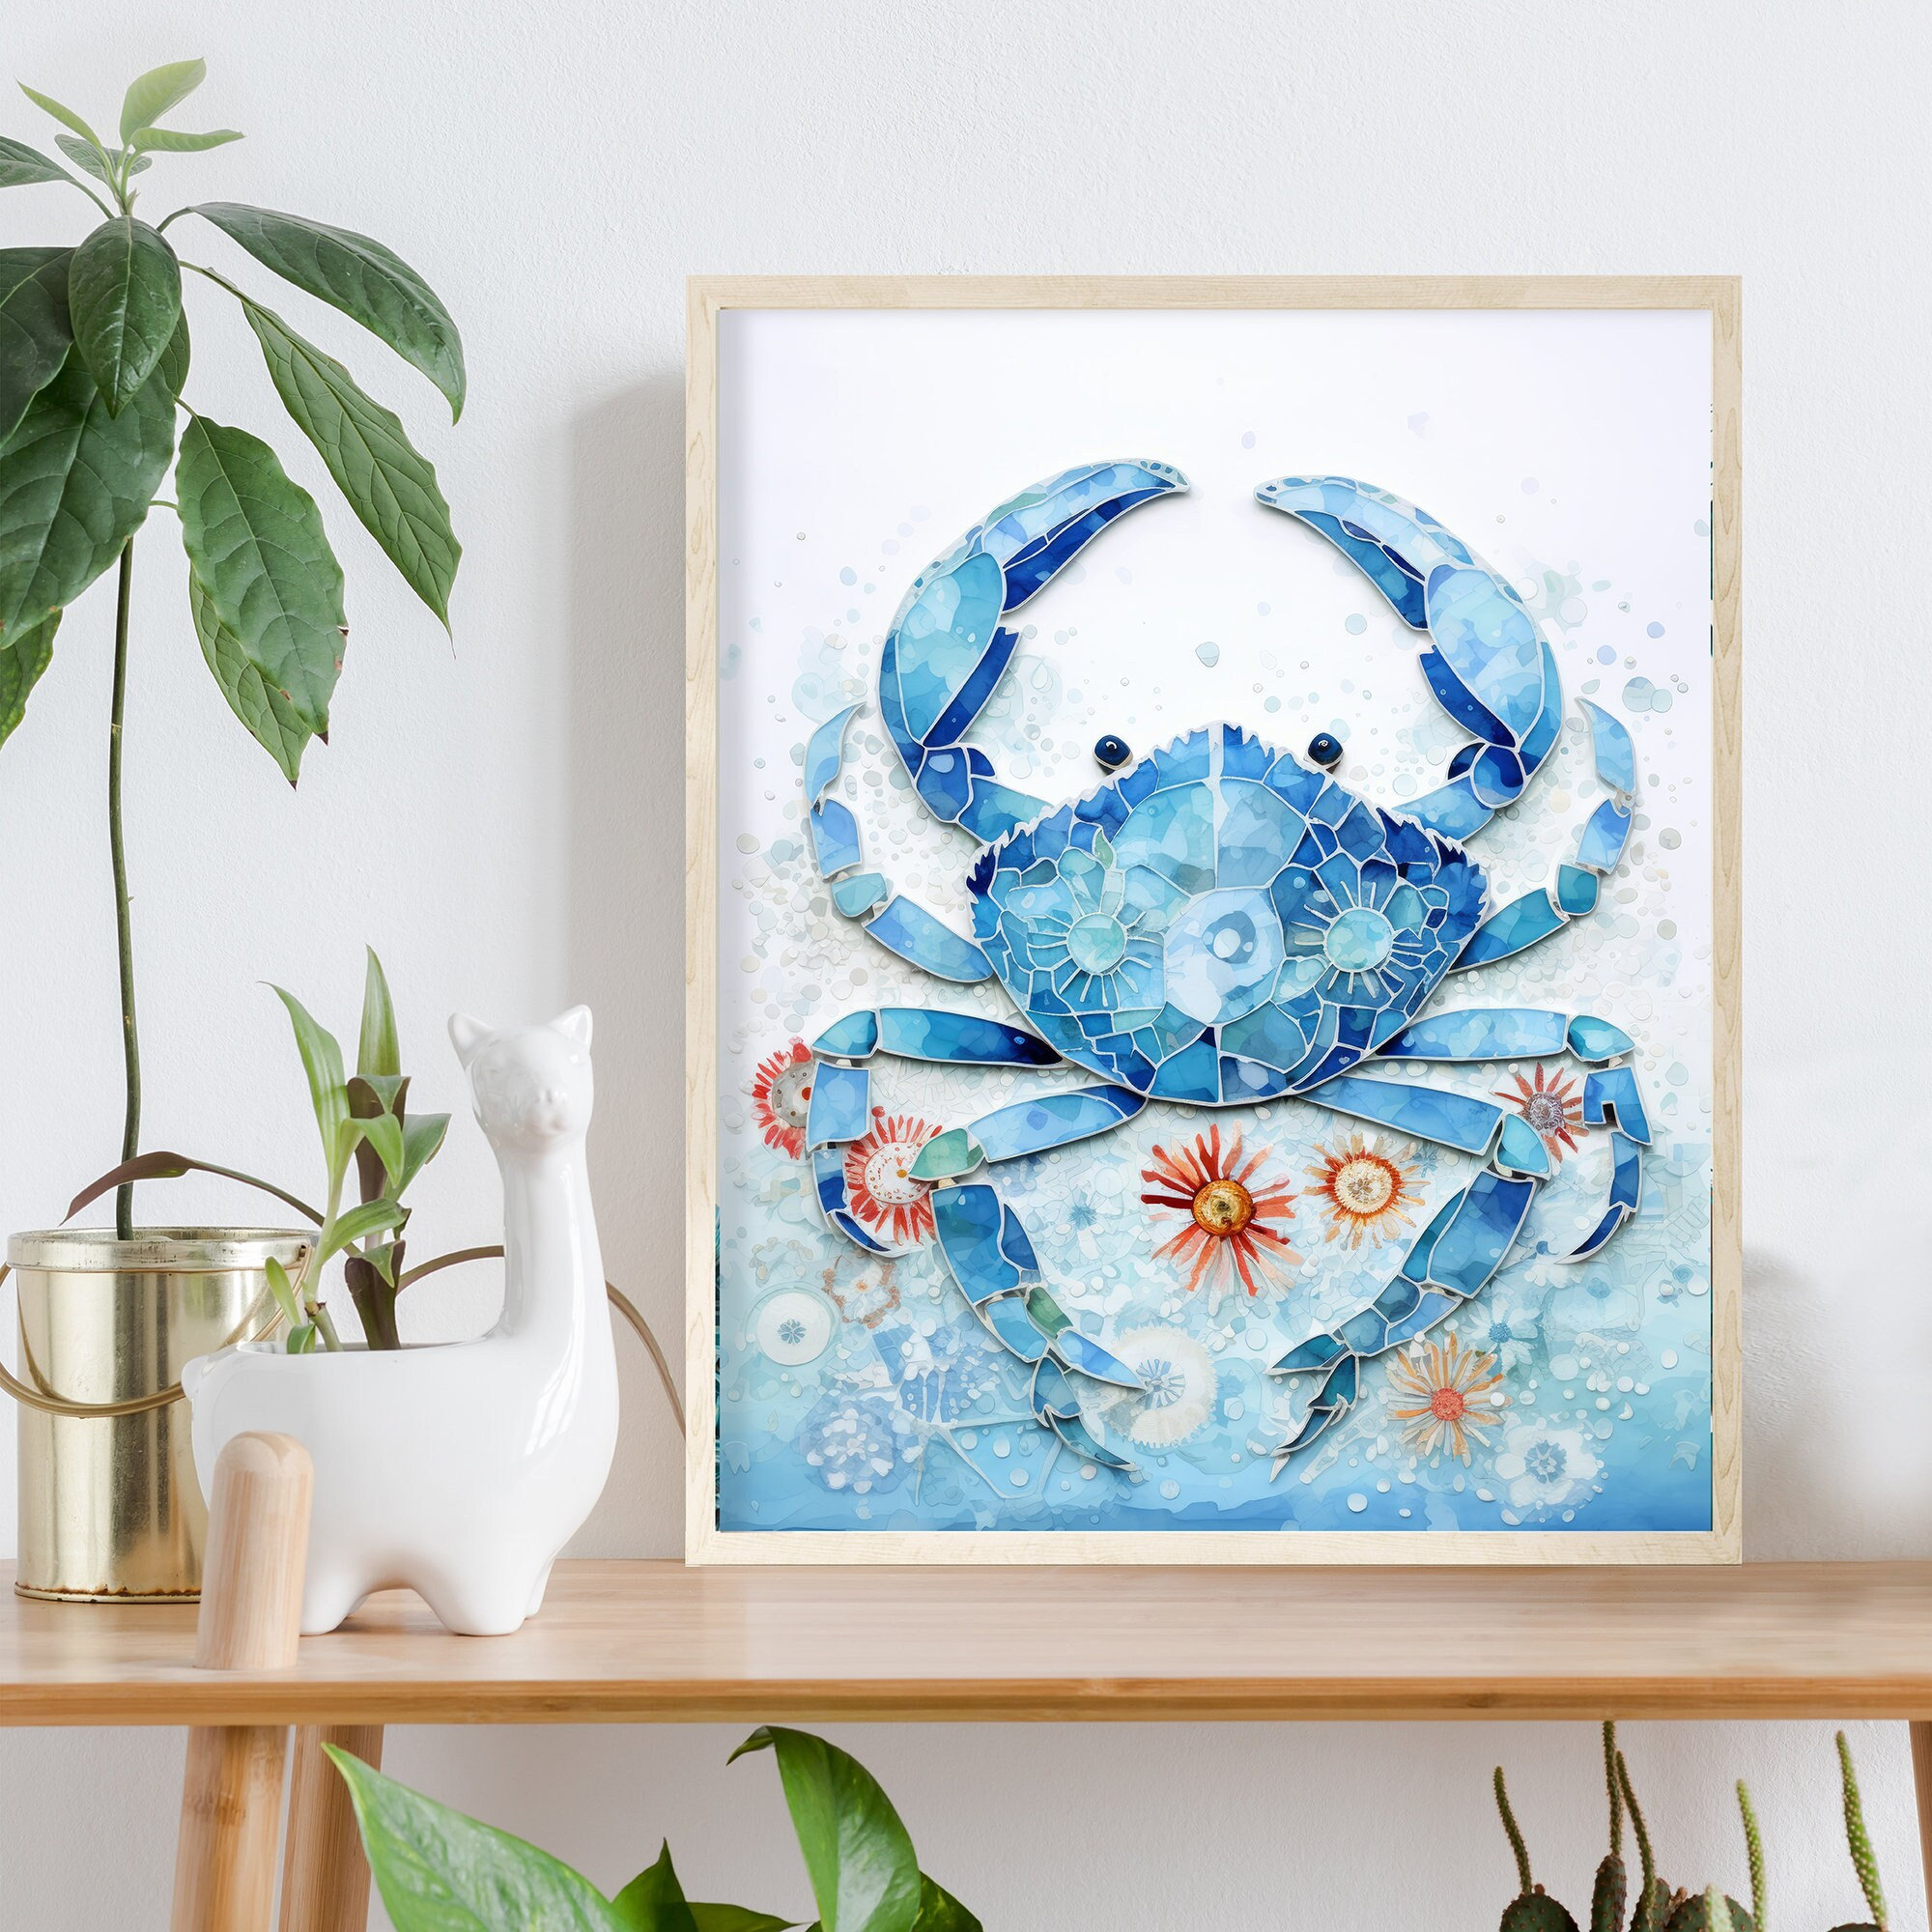 Blue Mosaic Crab Art Print, Maryland Crab Painting, Coastal Home